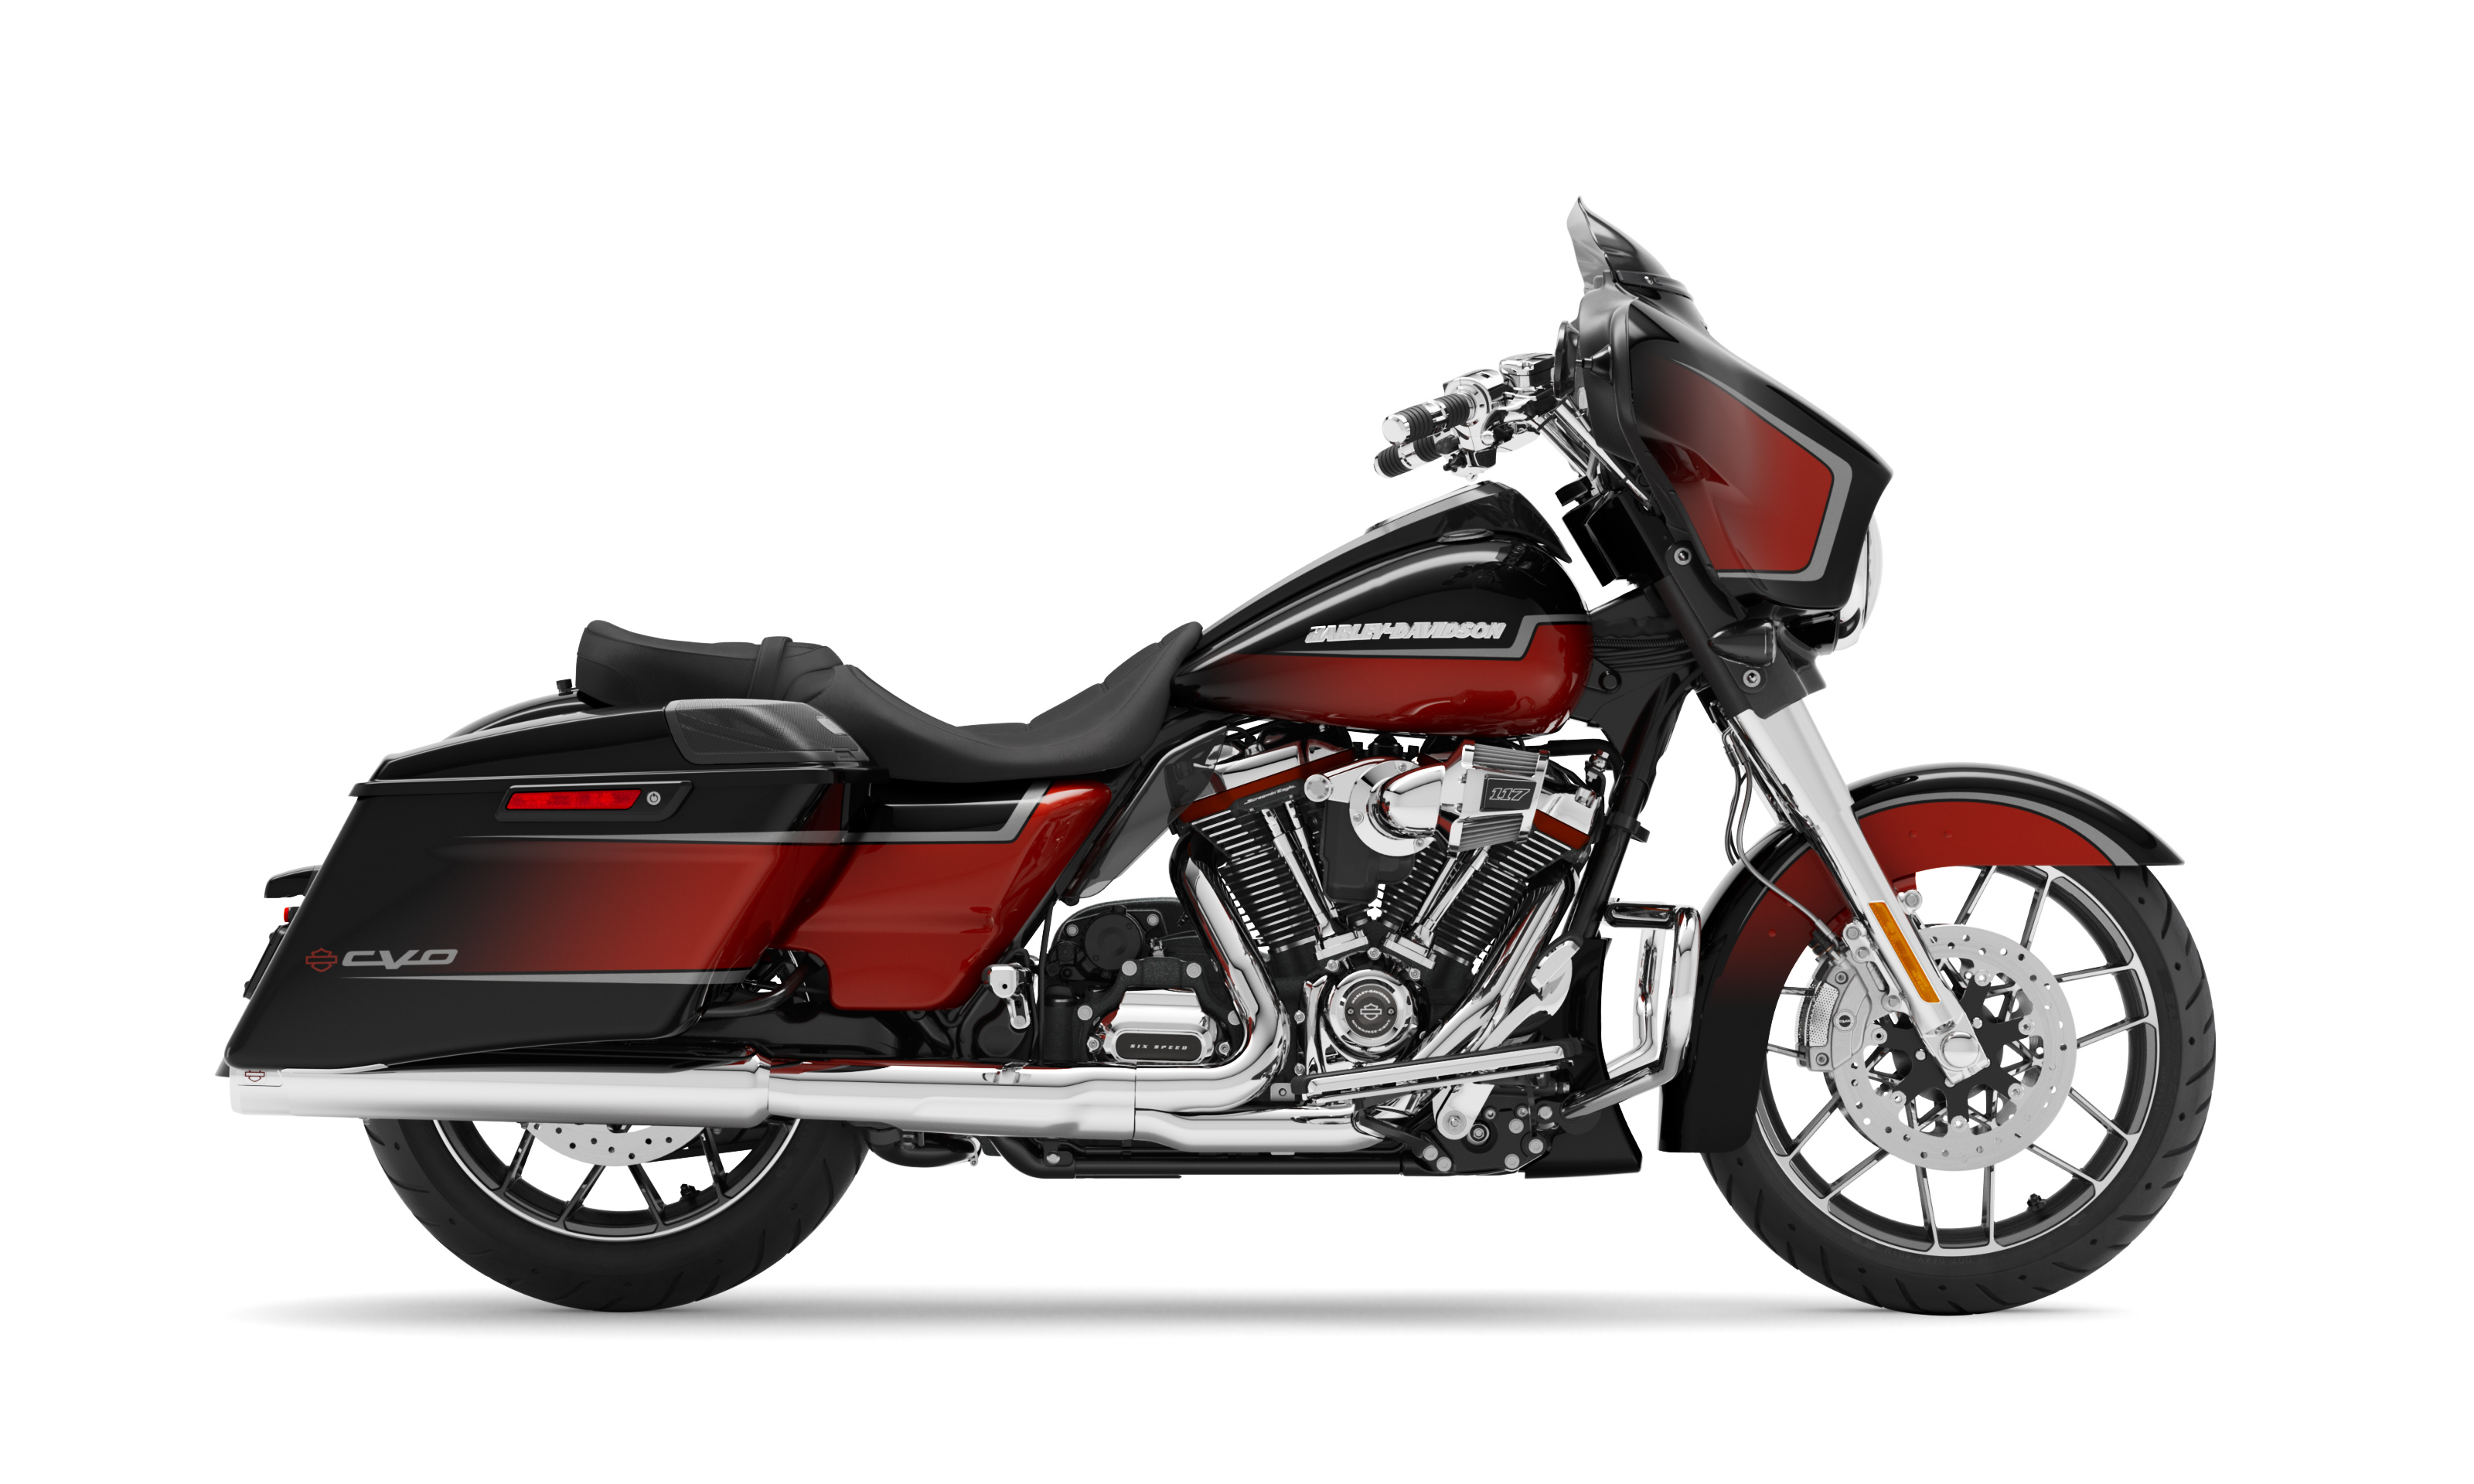 Harley Davidson Cvo Engine Promotion Off67